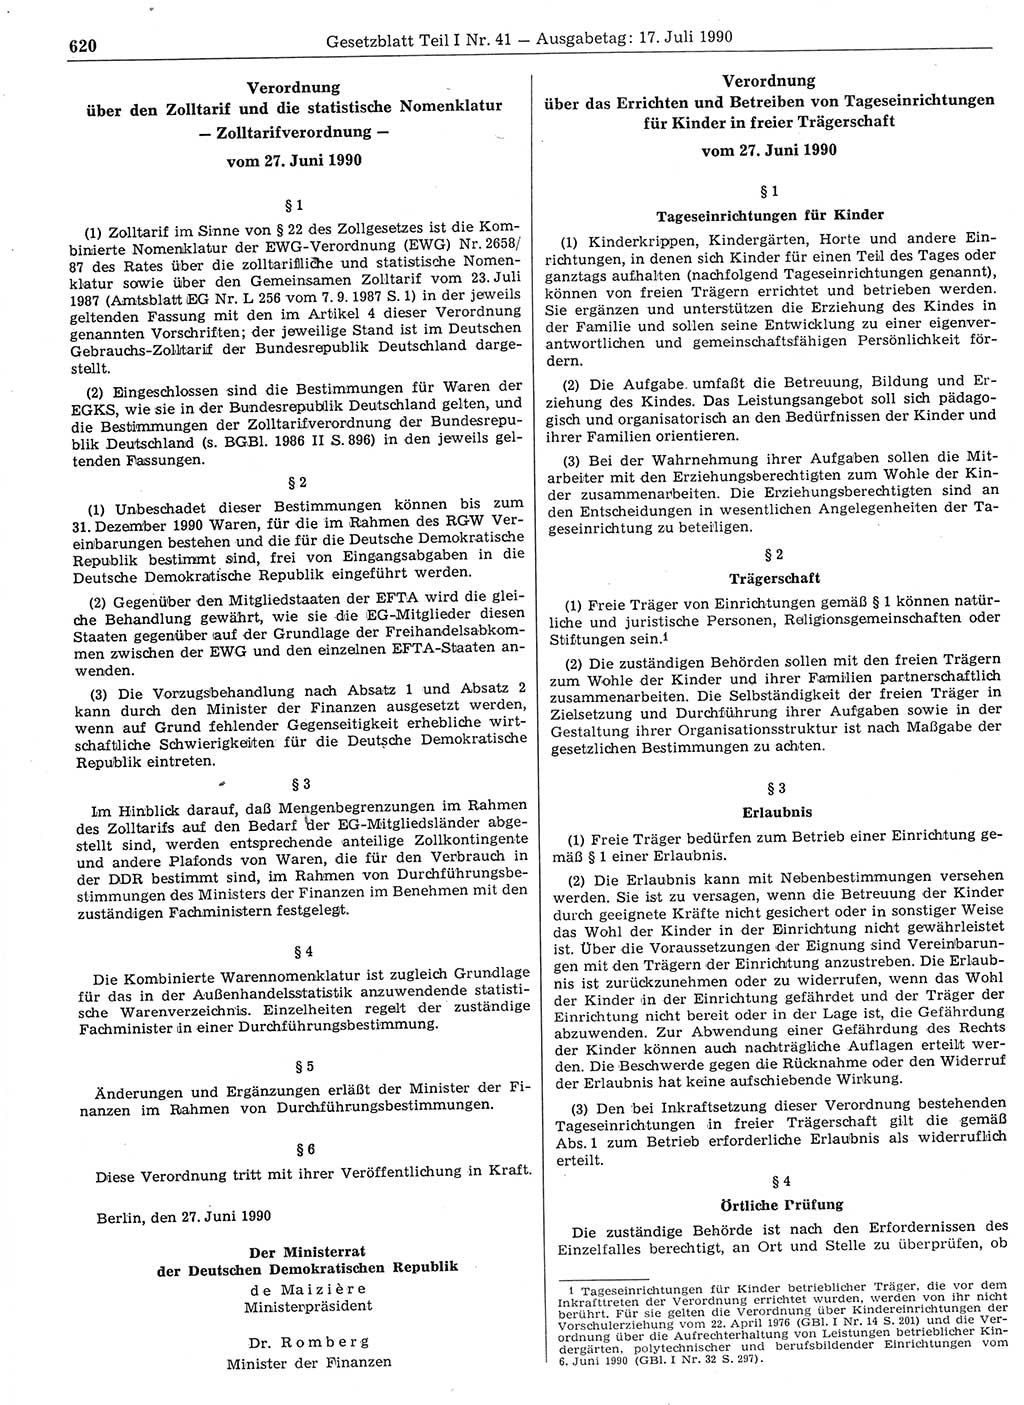 Gesetzblatt (GBl.) der Deutschen Demokratischen Republik (DDR) Teil Ⅰ 1990, Seite 620 (GBl. DDR Ⅰ 1990, S. 620)